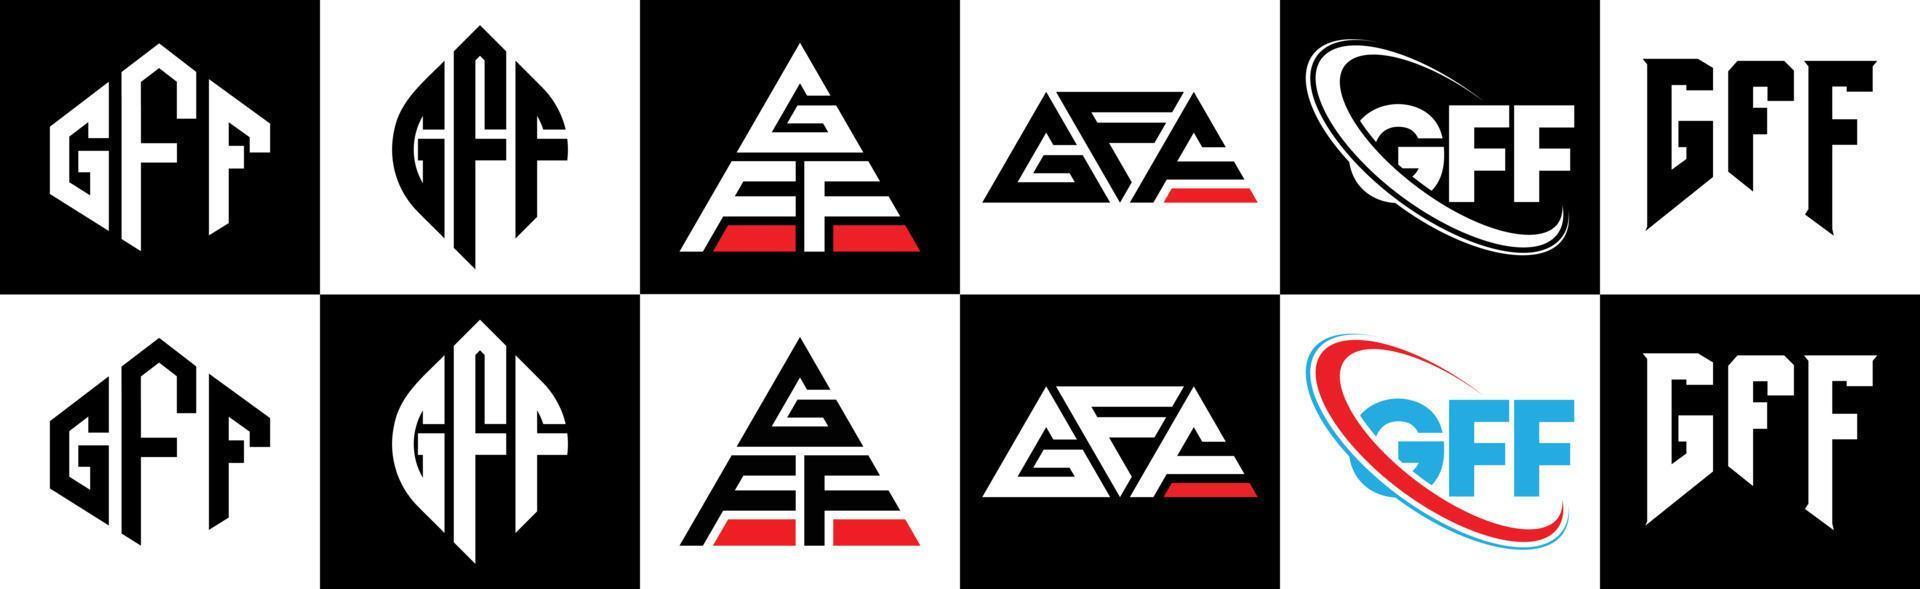 gff-Buchstaben-Logo-Design in sechs Stilen. gff-polygon, kreis, dreieck, sechseck, flacher und einfacher stil mit schwarz-weißem buchstabenlogo in einer zeichenfläche. gff minimalistisches und klassisches logo vektor